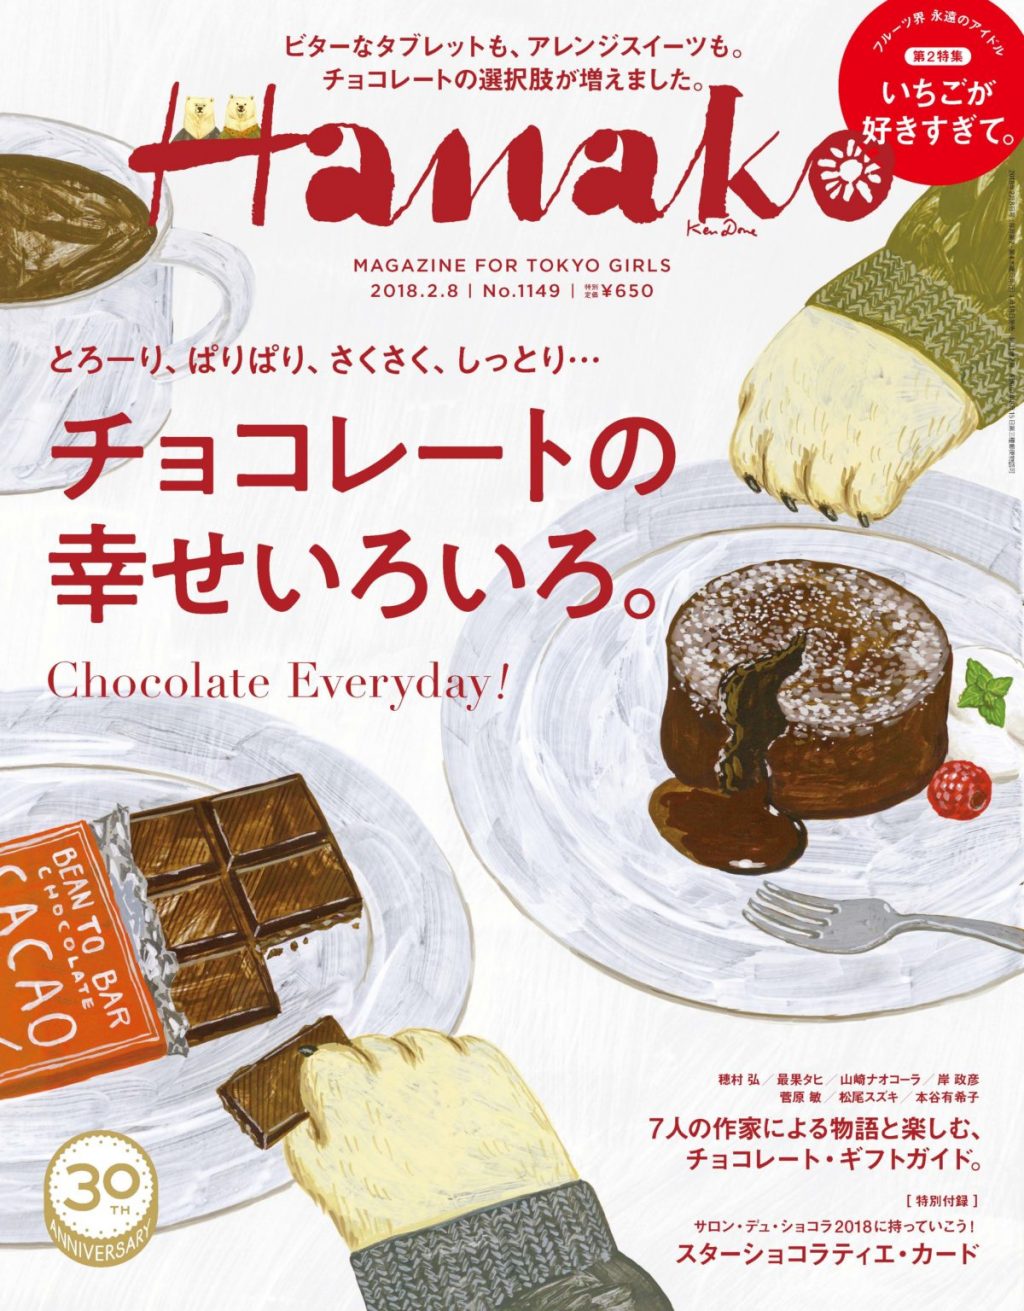 伊勢丹新宿店 スイーツコレクション で買える デザインコンシャスなチョコレート4選 Report Hanako Tokyo